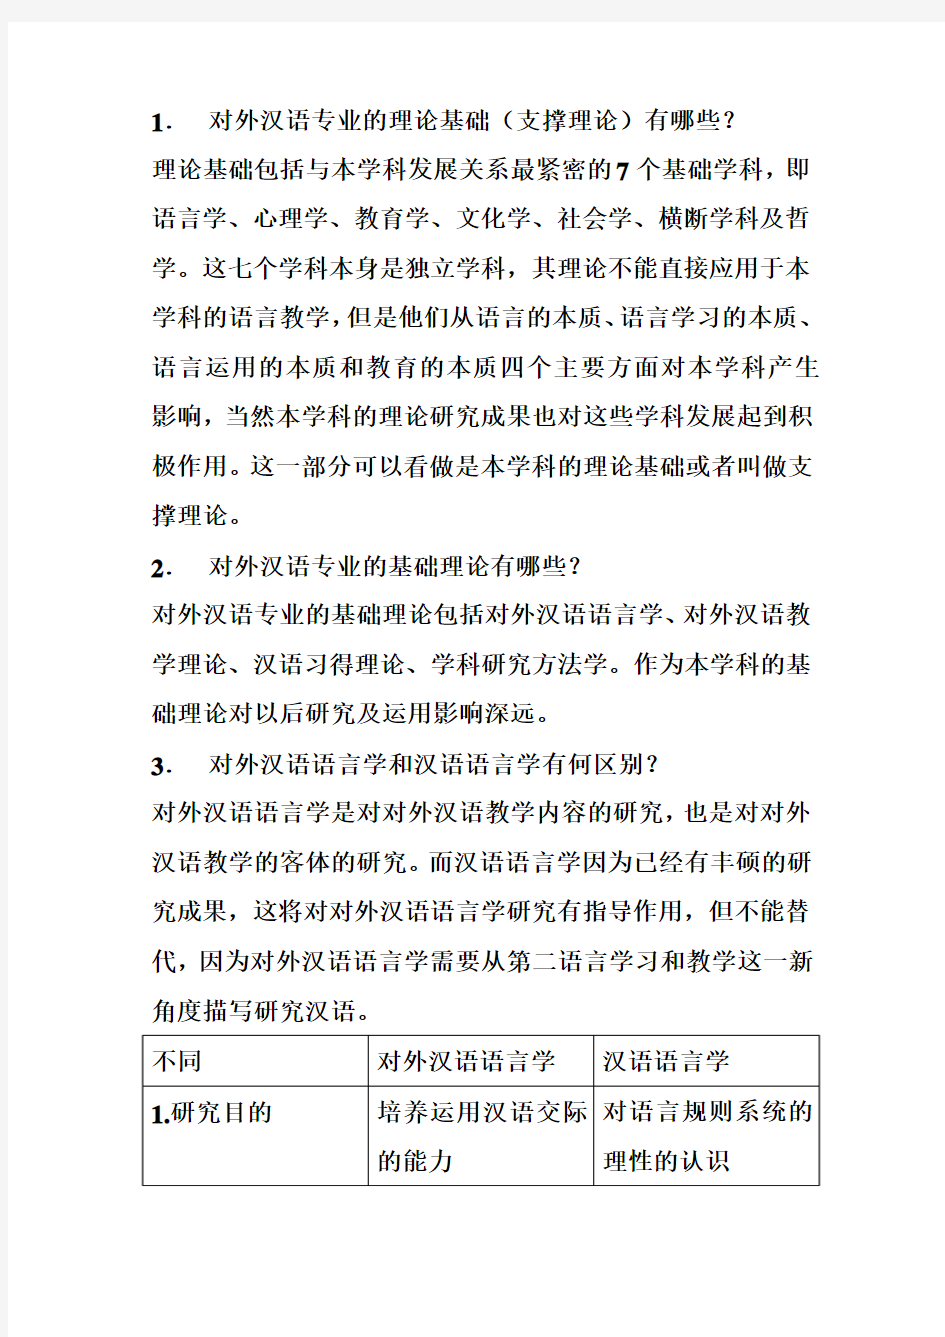 《对外汉语教学概论》第一章复习题